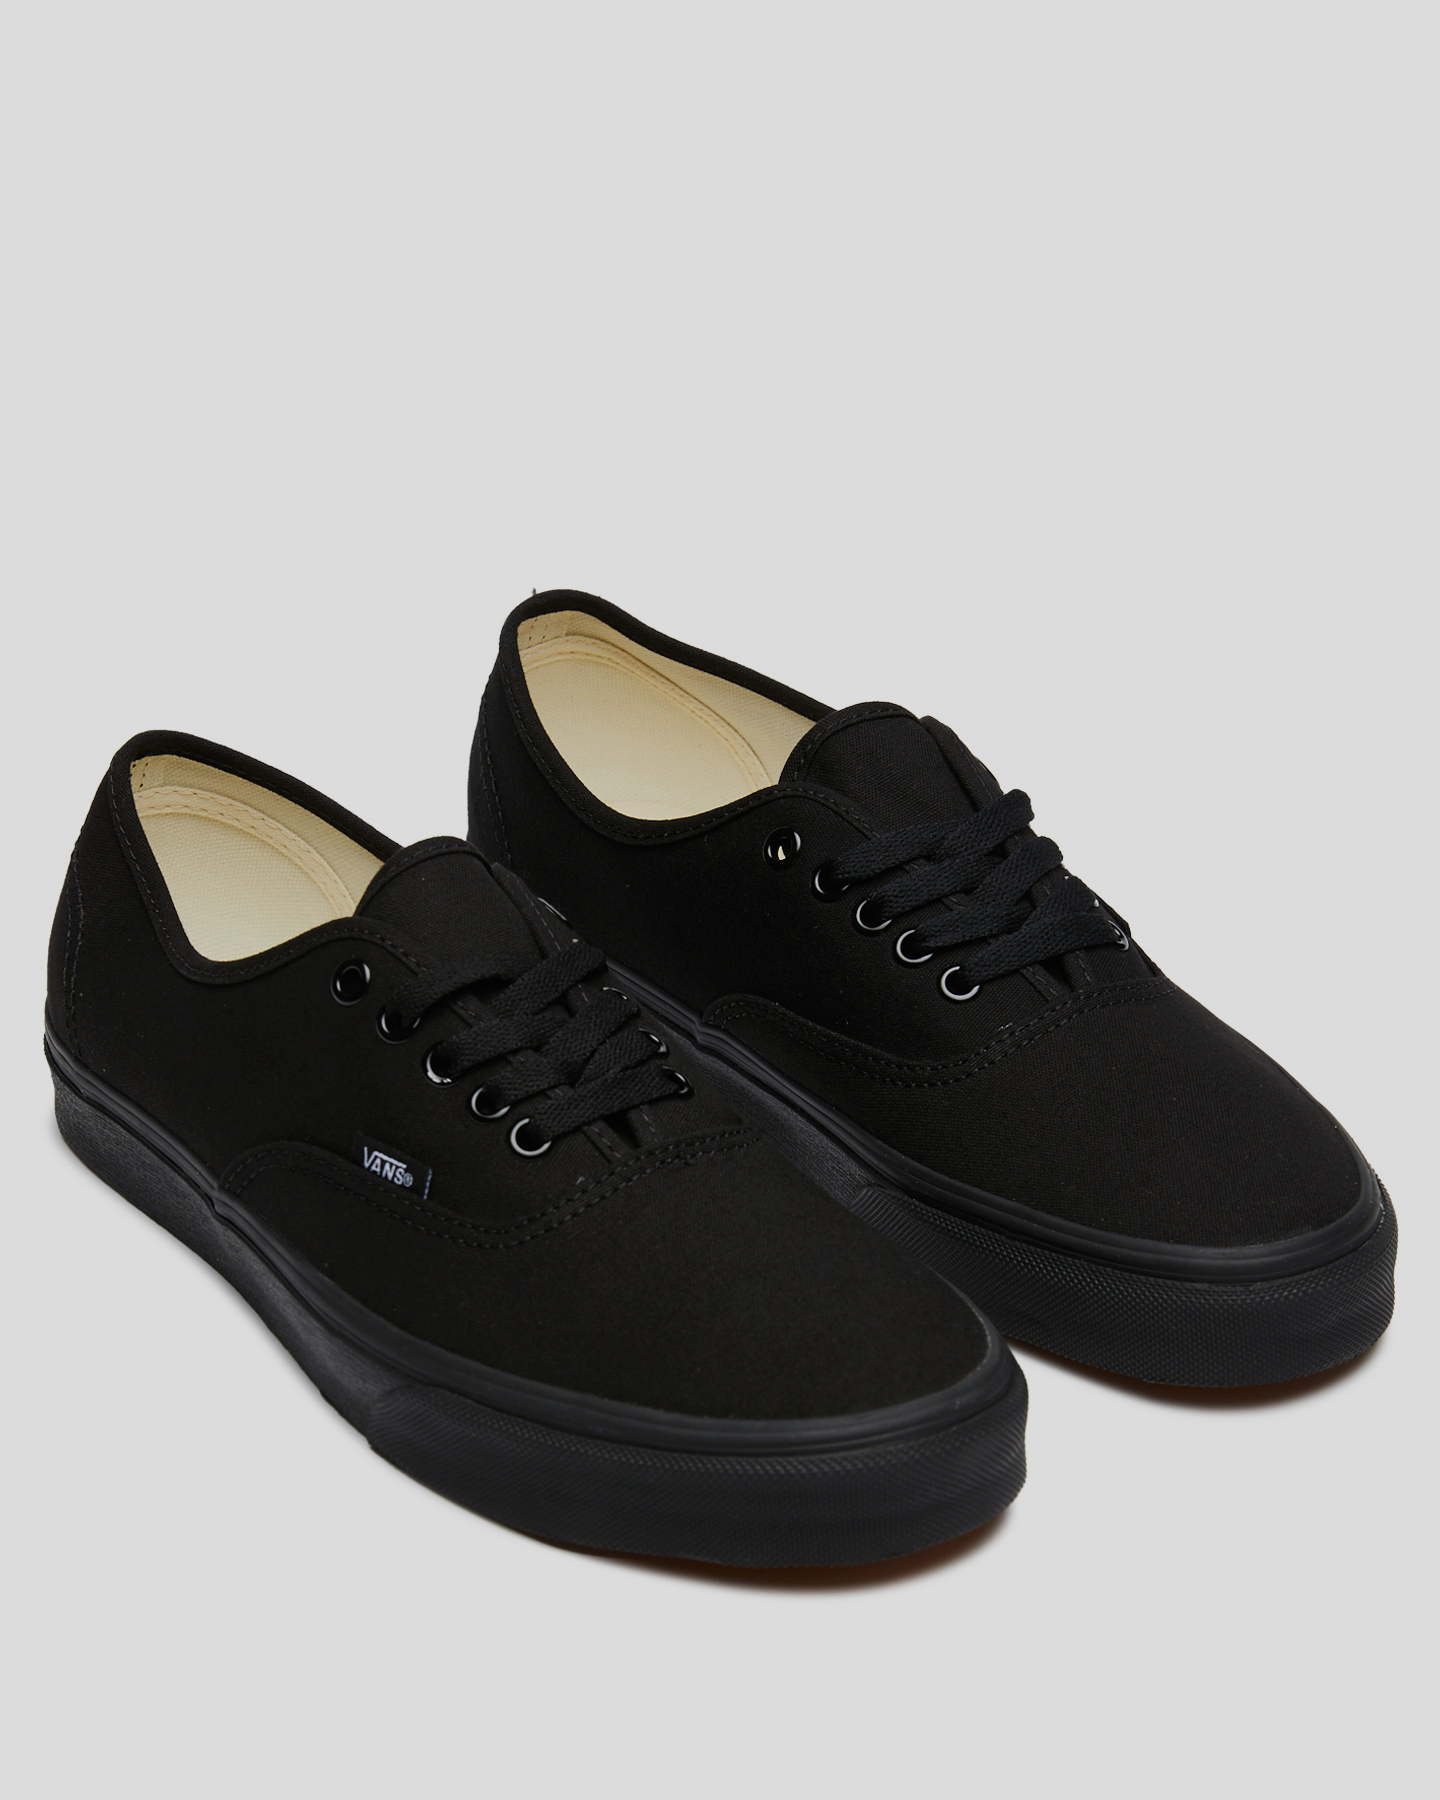 Vans Authentic Shoe - Black/Black 